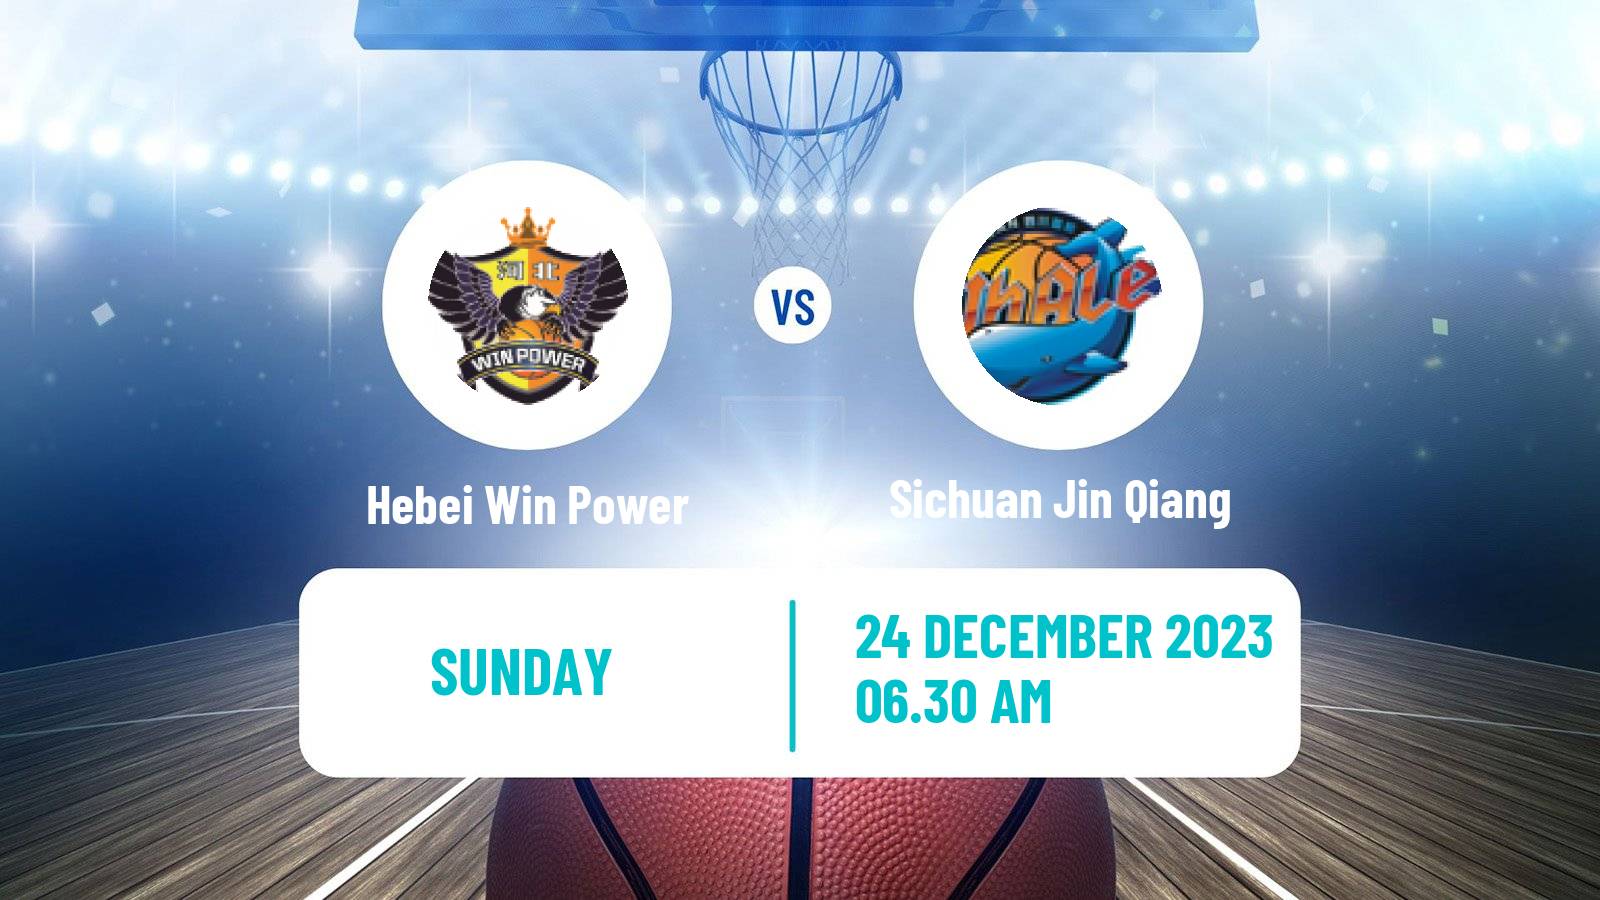 Basketball WCBA Hebei Win Power - Sichuan Jin Qiang